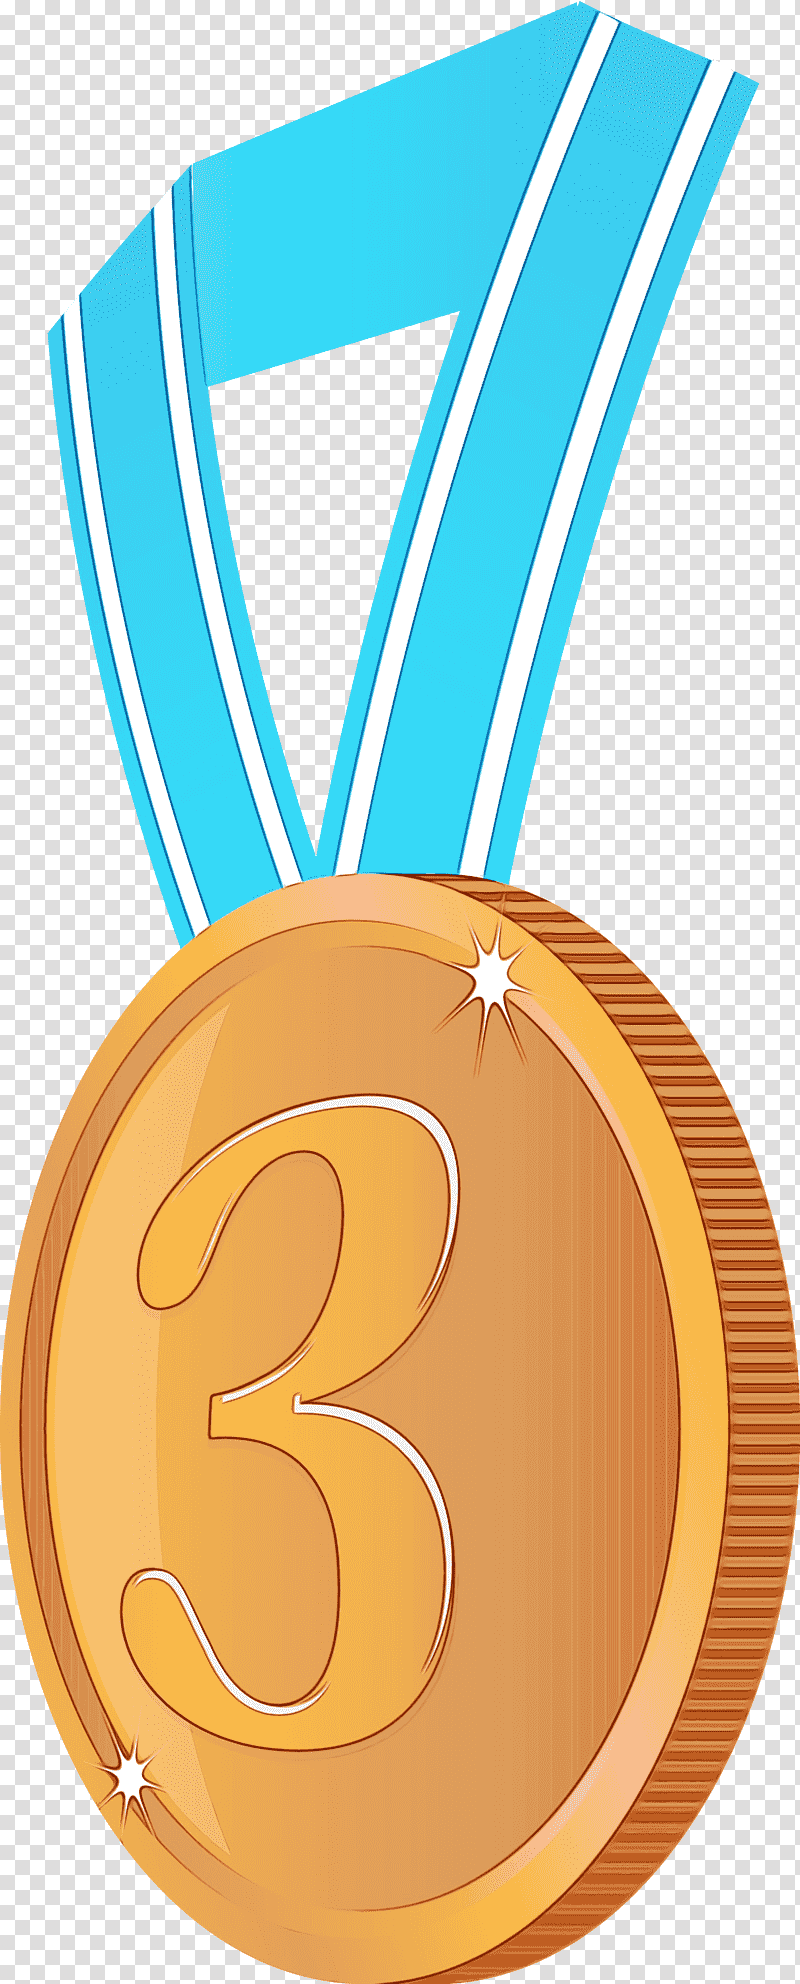 Gold medal, Brozen Badge, Award Badge, Watercolor, Paint, Wet Ink, Orange transparent background PNG clipart